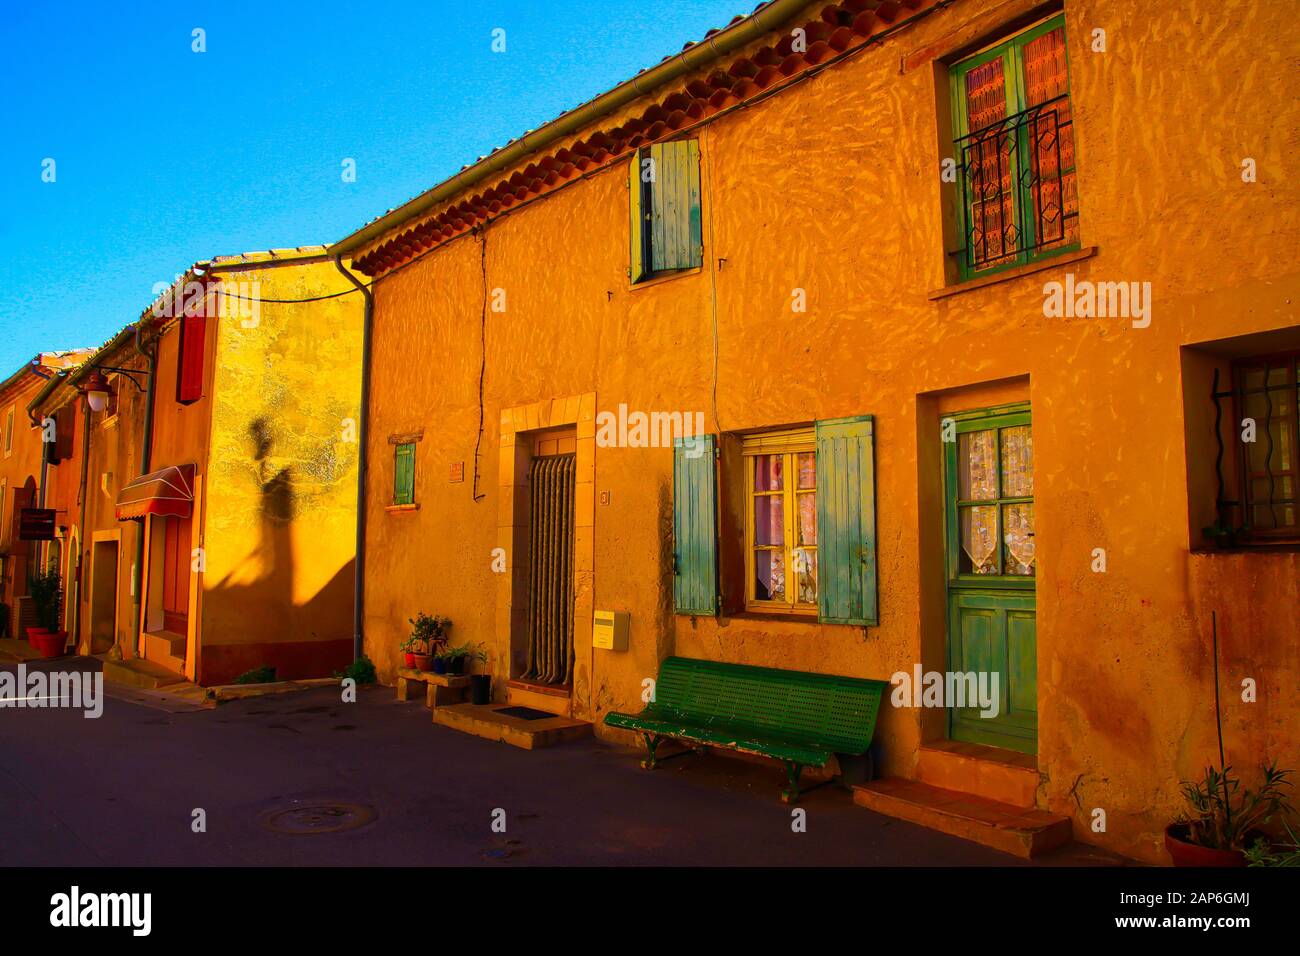 Roussillon En Provence, France - 2 Octobre. 2019: Vue sur la façade des maisons jaunes rouges typiques contre le ciel bleu Banque D'Images